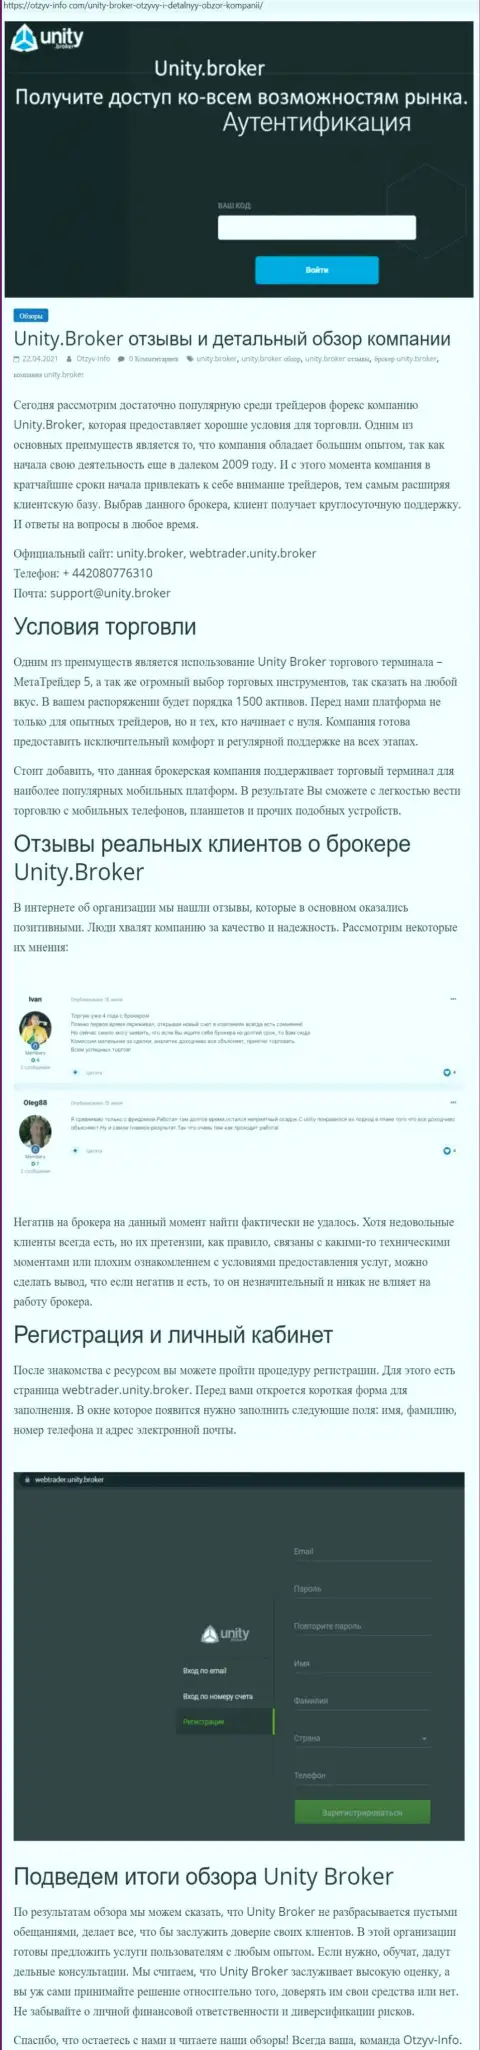 Характеристика работы Форекс-брокерской организации Unity Broker на сайте отзыв-инфо ком